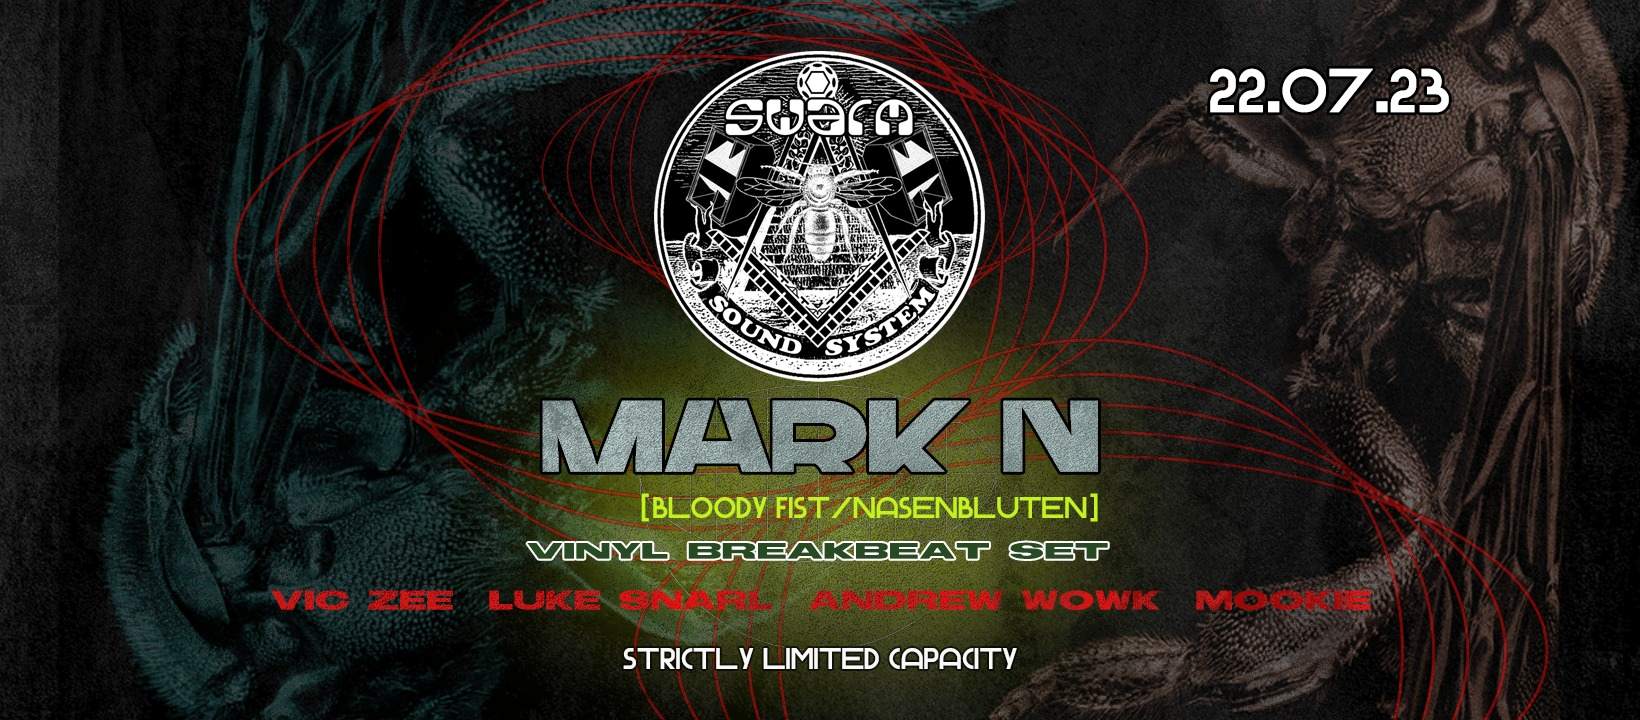 Swarm presents MARK N [VINYL BREAKBEAT SET] - Página frontal